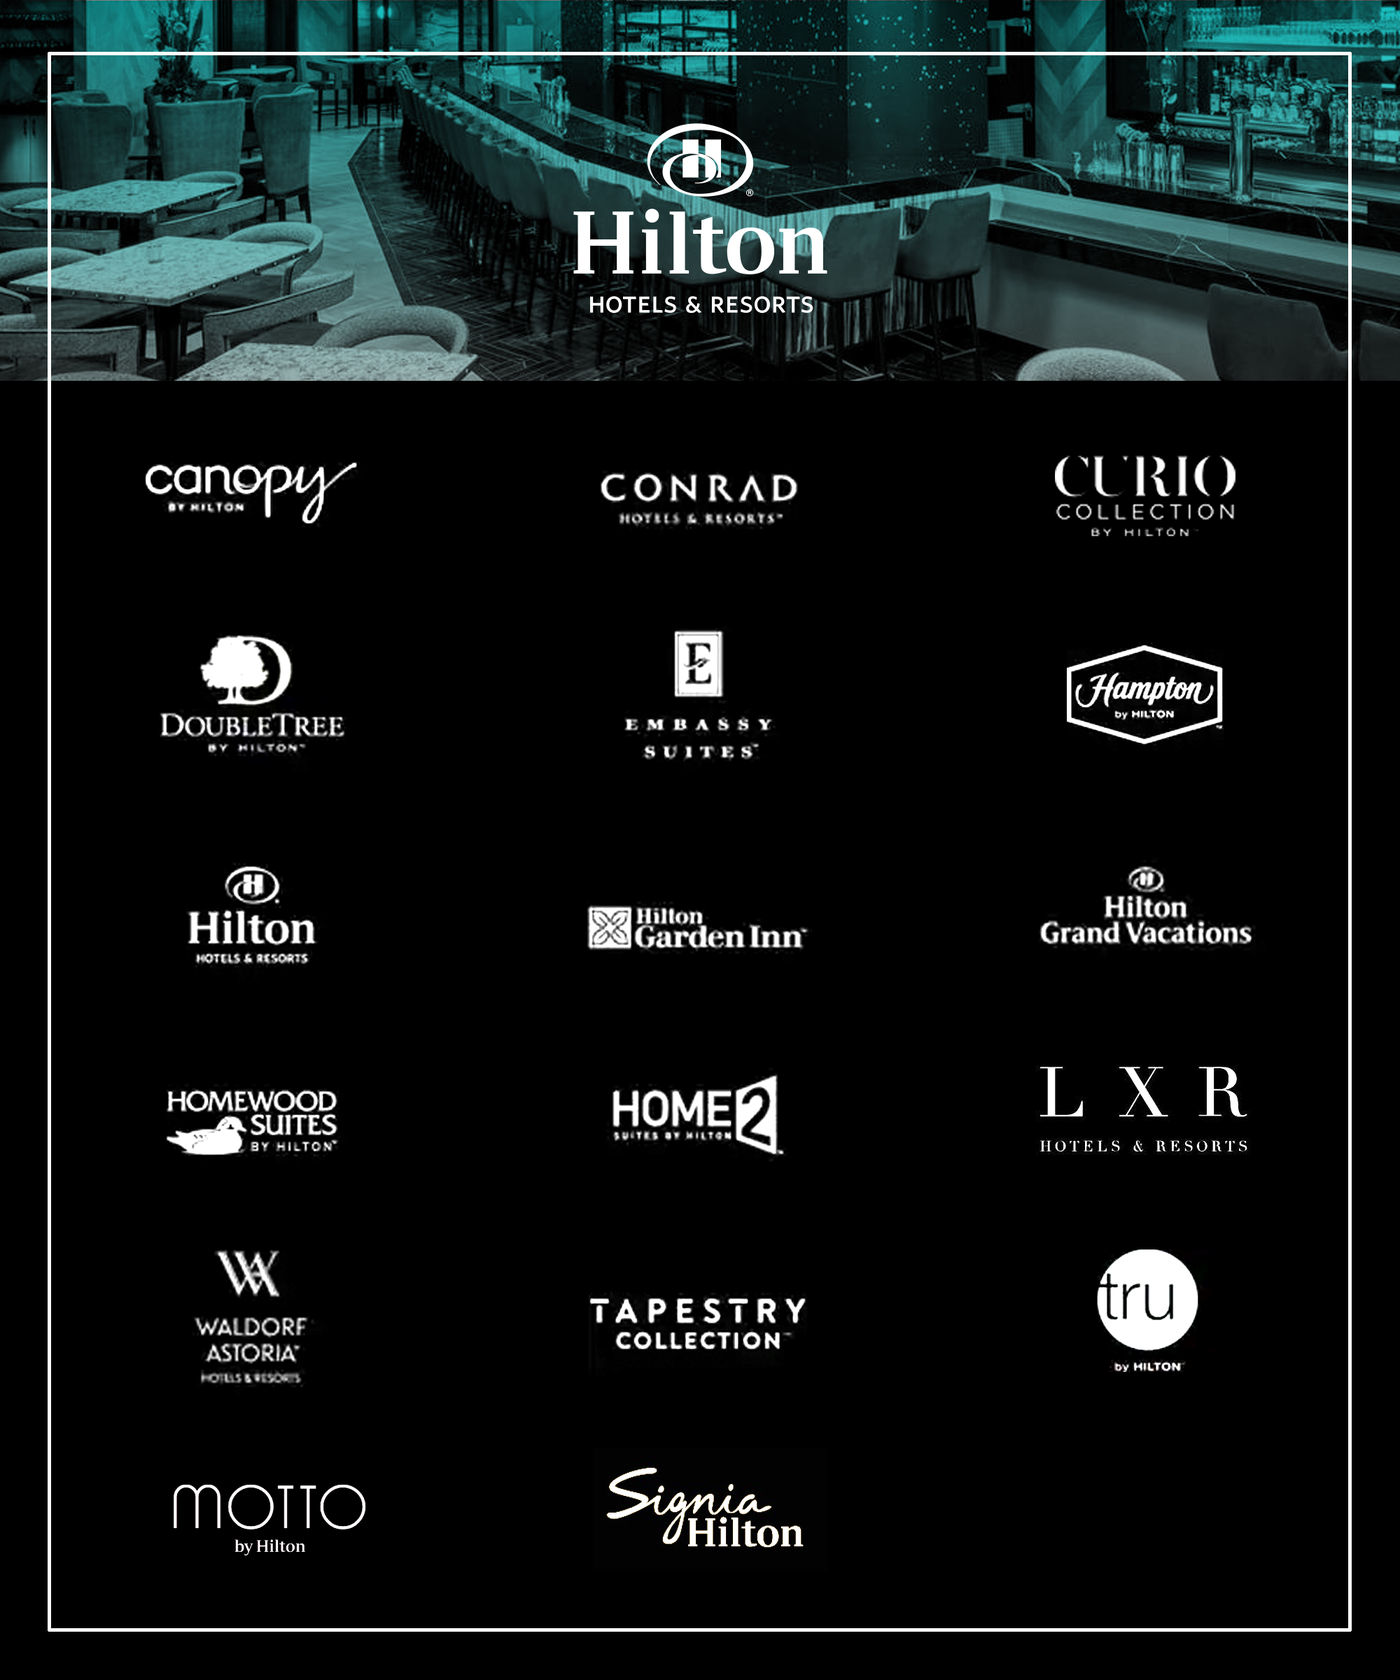 希尔顿标志:一个品牌试图使酒店会议变得时髦